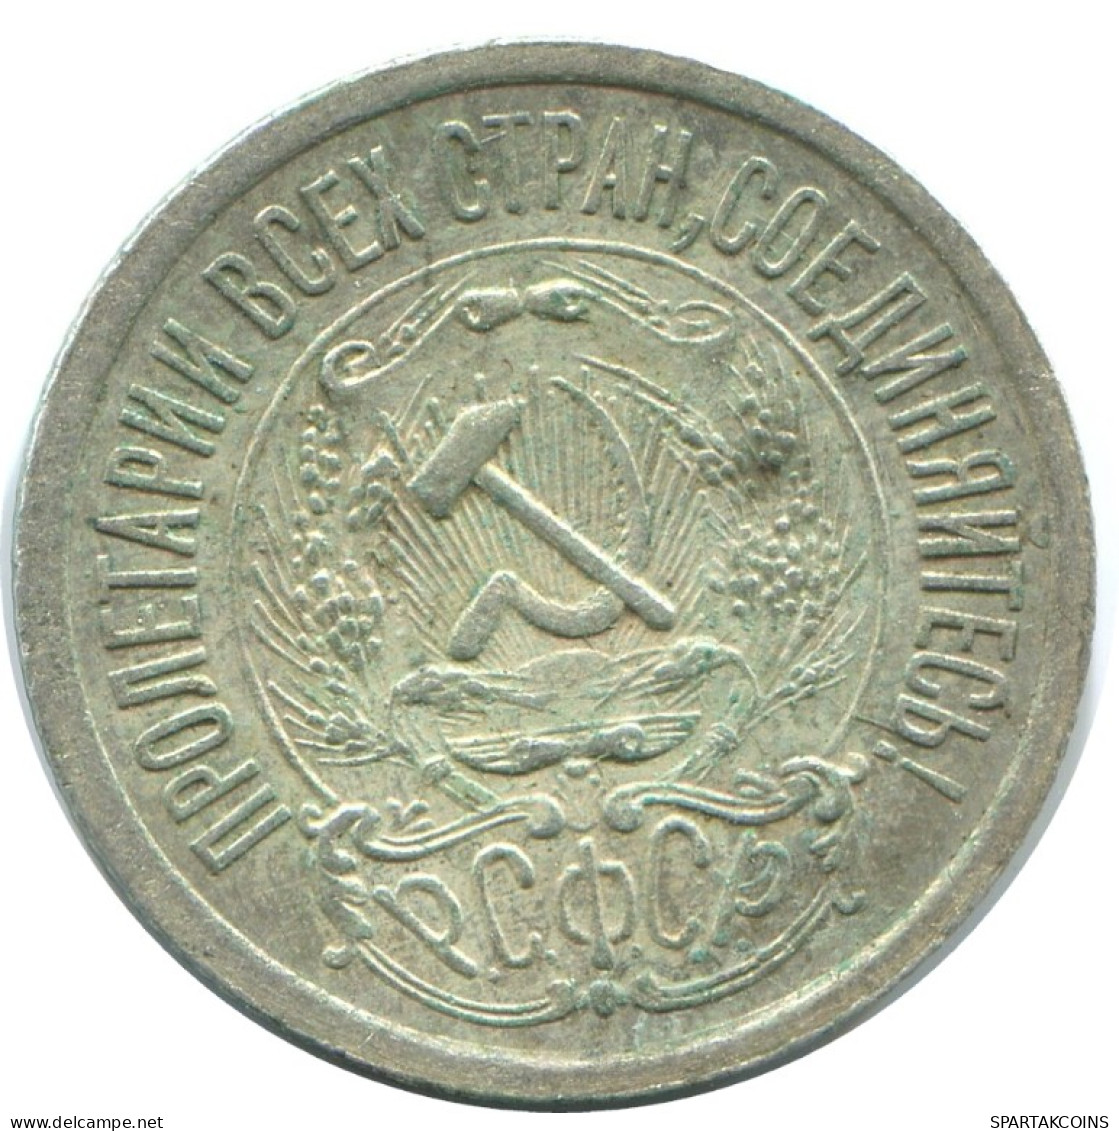 15 KOPEKS 1923 RUSSIA RSFSR SILVER Coin HIGH GRADE #AF067.4.U.A - Rusland